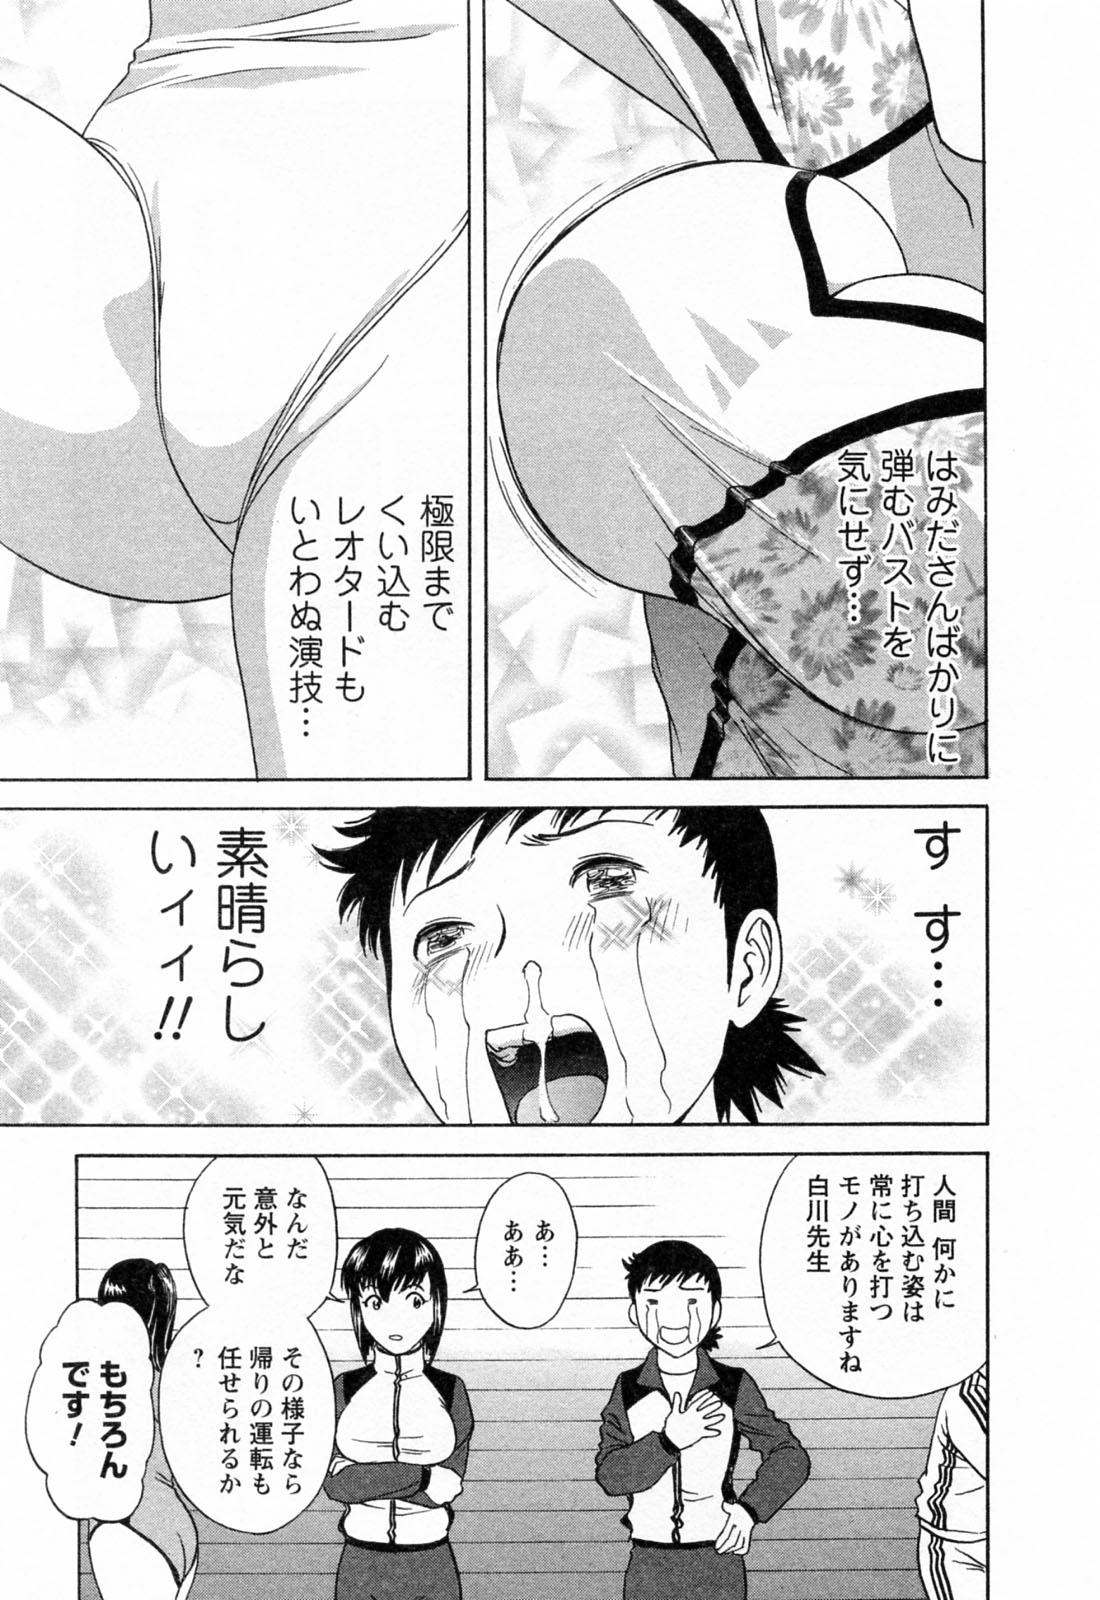 [Hidemaru] Mo-Retsu! Boin Sensei (Boing Boing Teacher) Vol.4 38